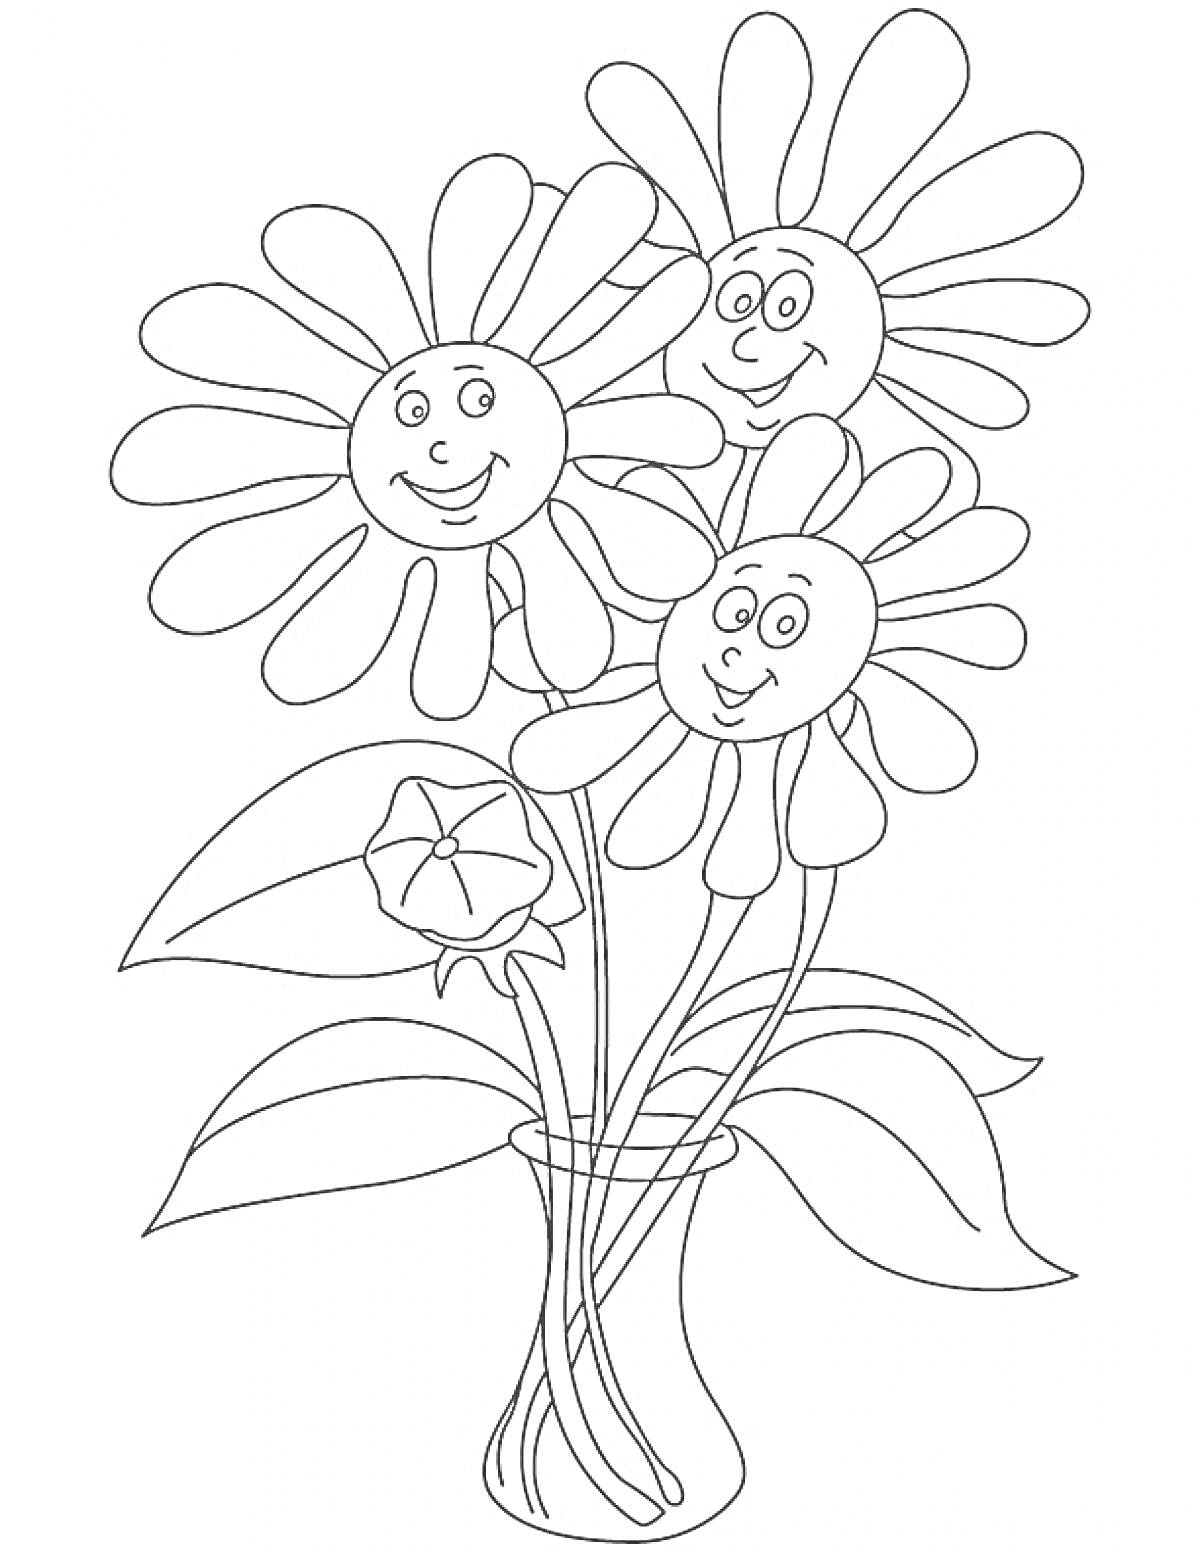 Три улыбающихся цветка в вазе с листьями и нераскрывшимся бутоном